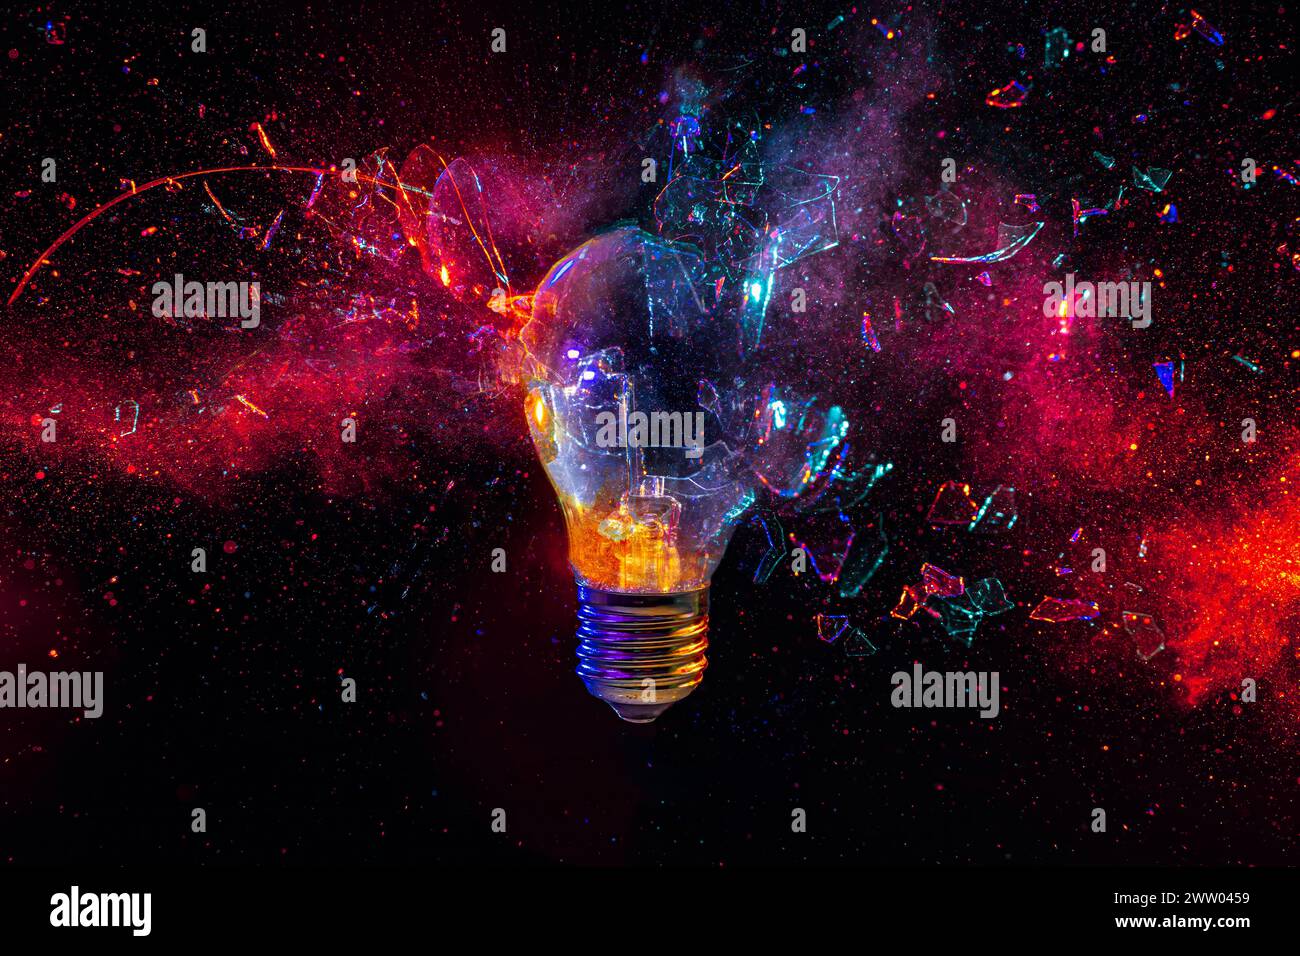 Immagine astratta di una lampadina esplosiva con sfondo cosmico Foto Stock